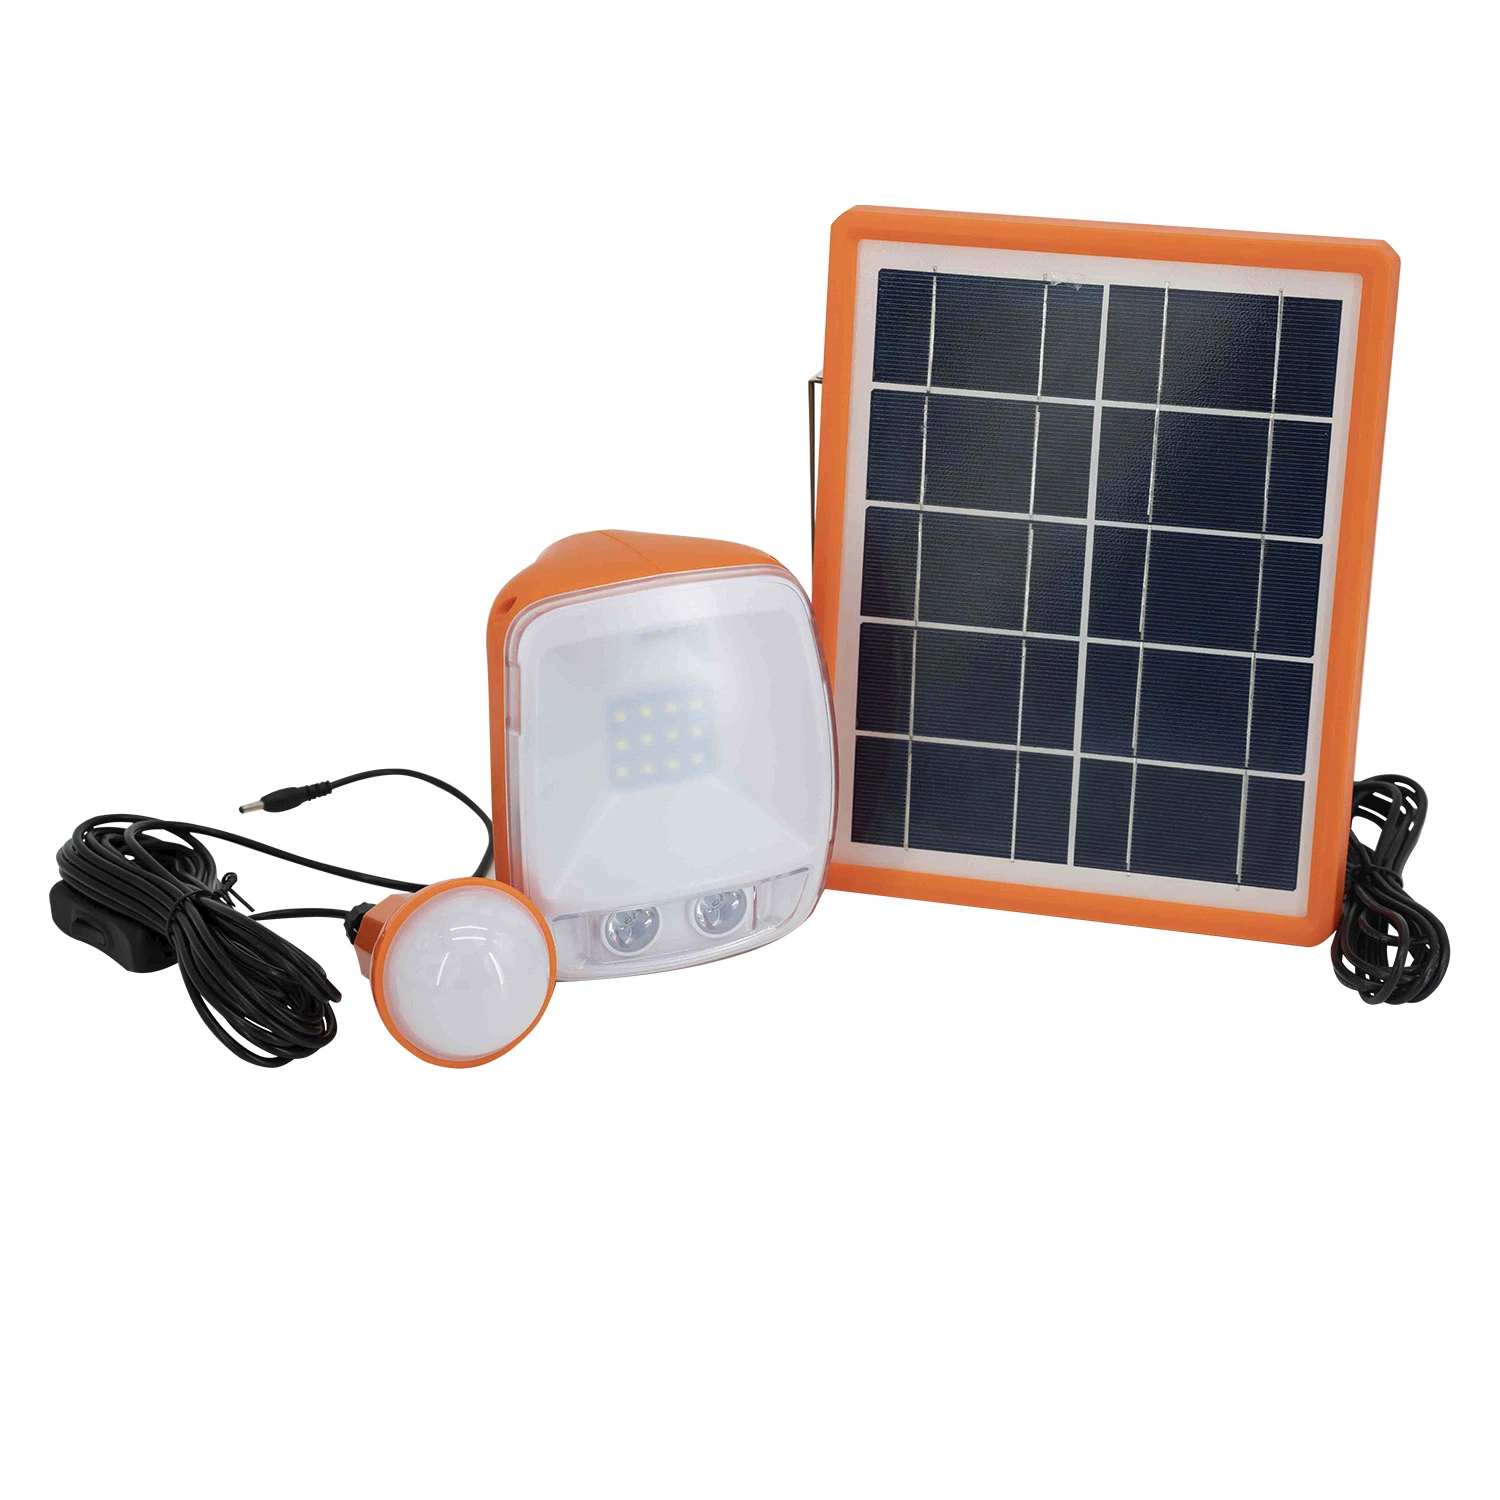 Petite lanterne solaire portable pour usage domestique (chargeur/lampe de poche mobile)